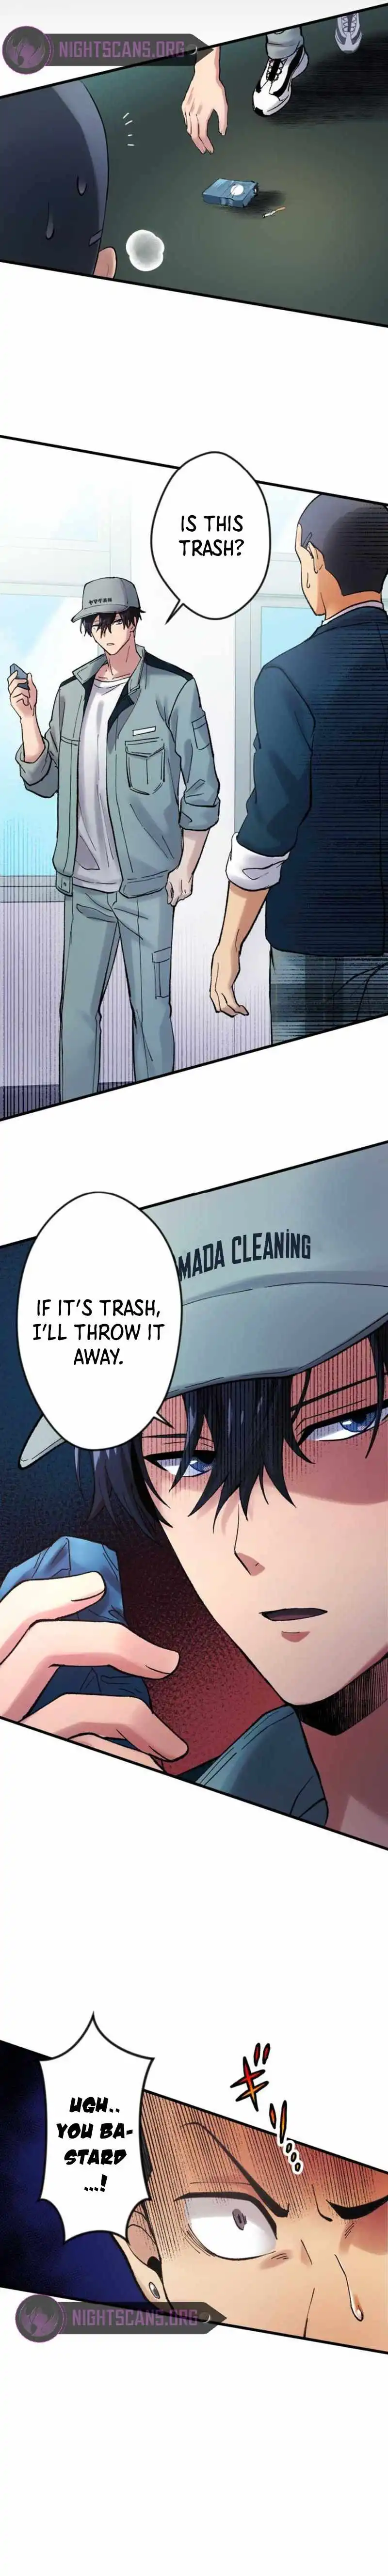 Yakuza Cleaner Chapter 2